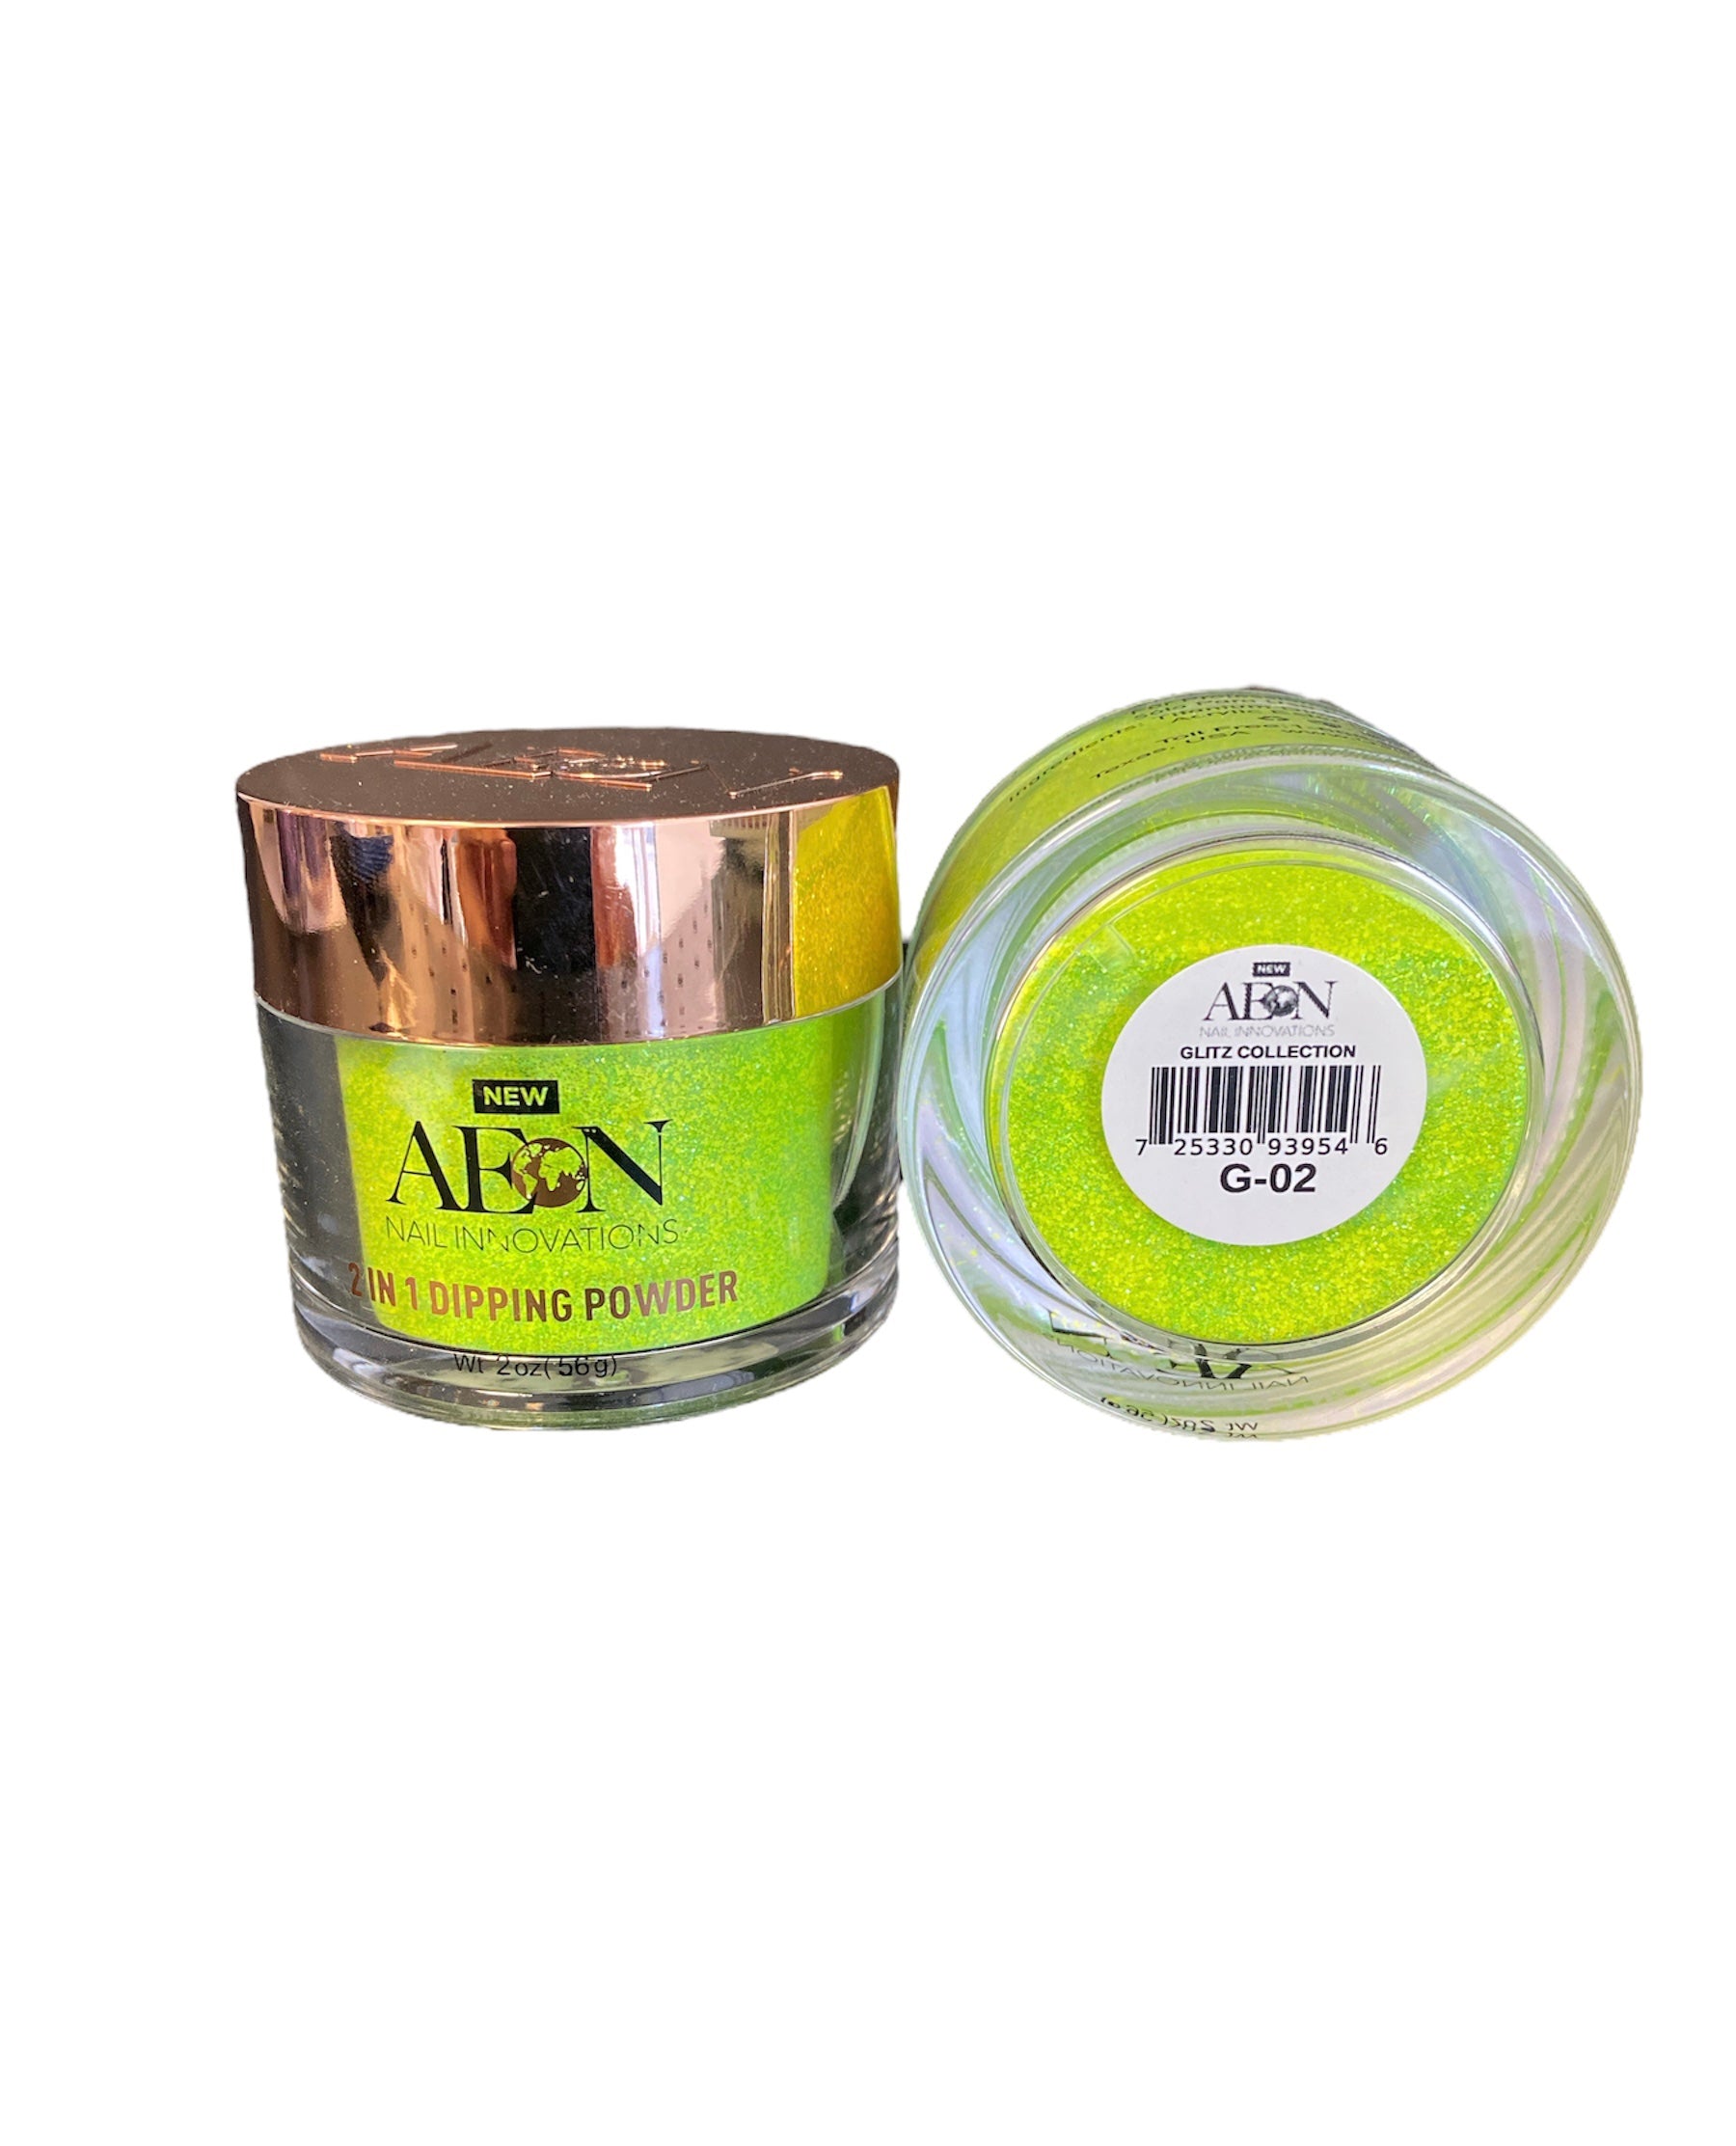 Aeon Glitter -  2 oz - #G-02 - Premier Nail Supply 